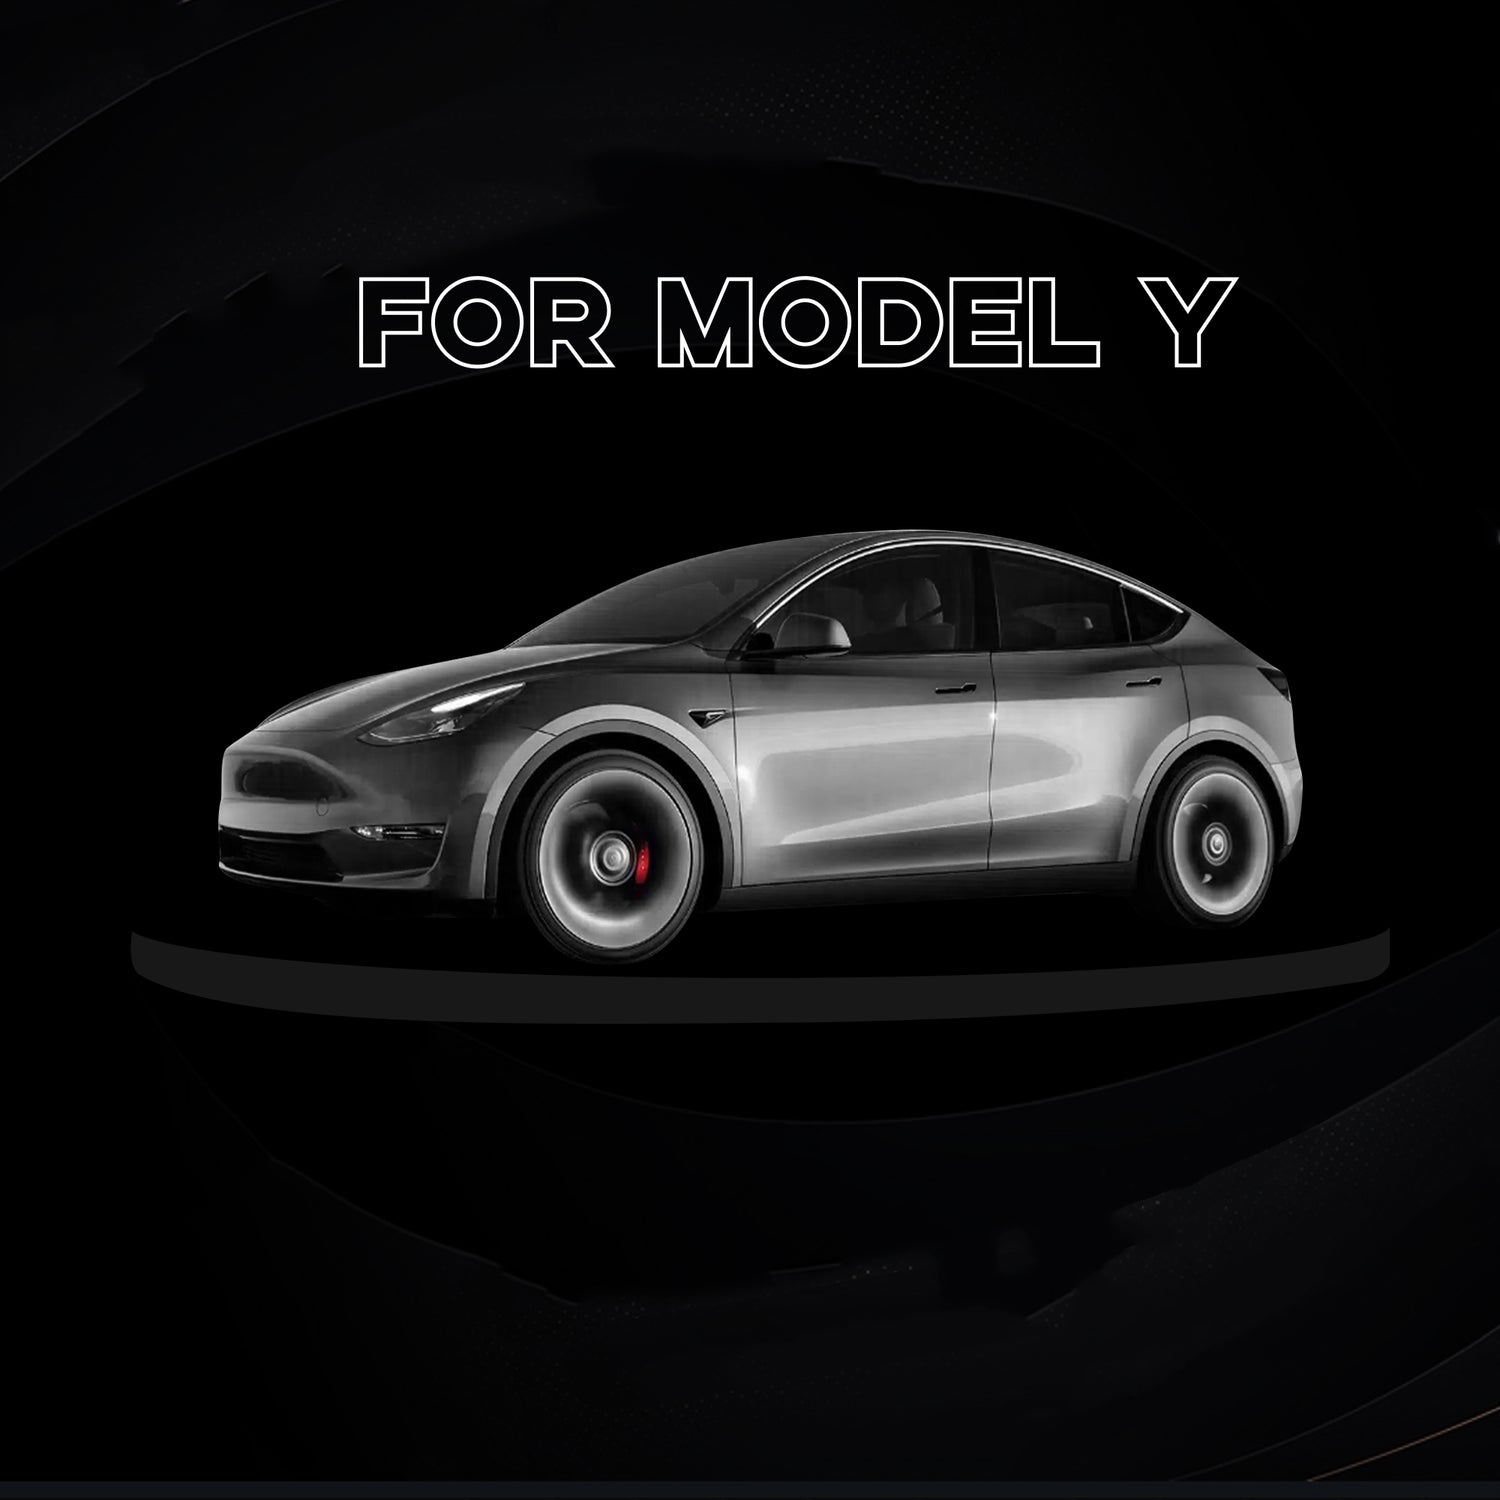 Bestseller Zubehör für Tesla Model 3 Y S X – Arcoche